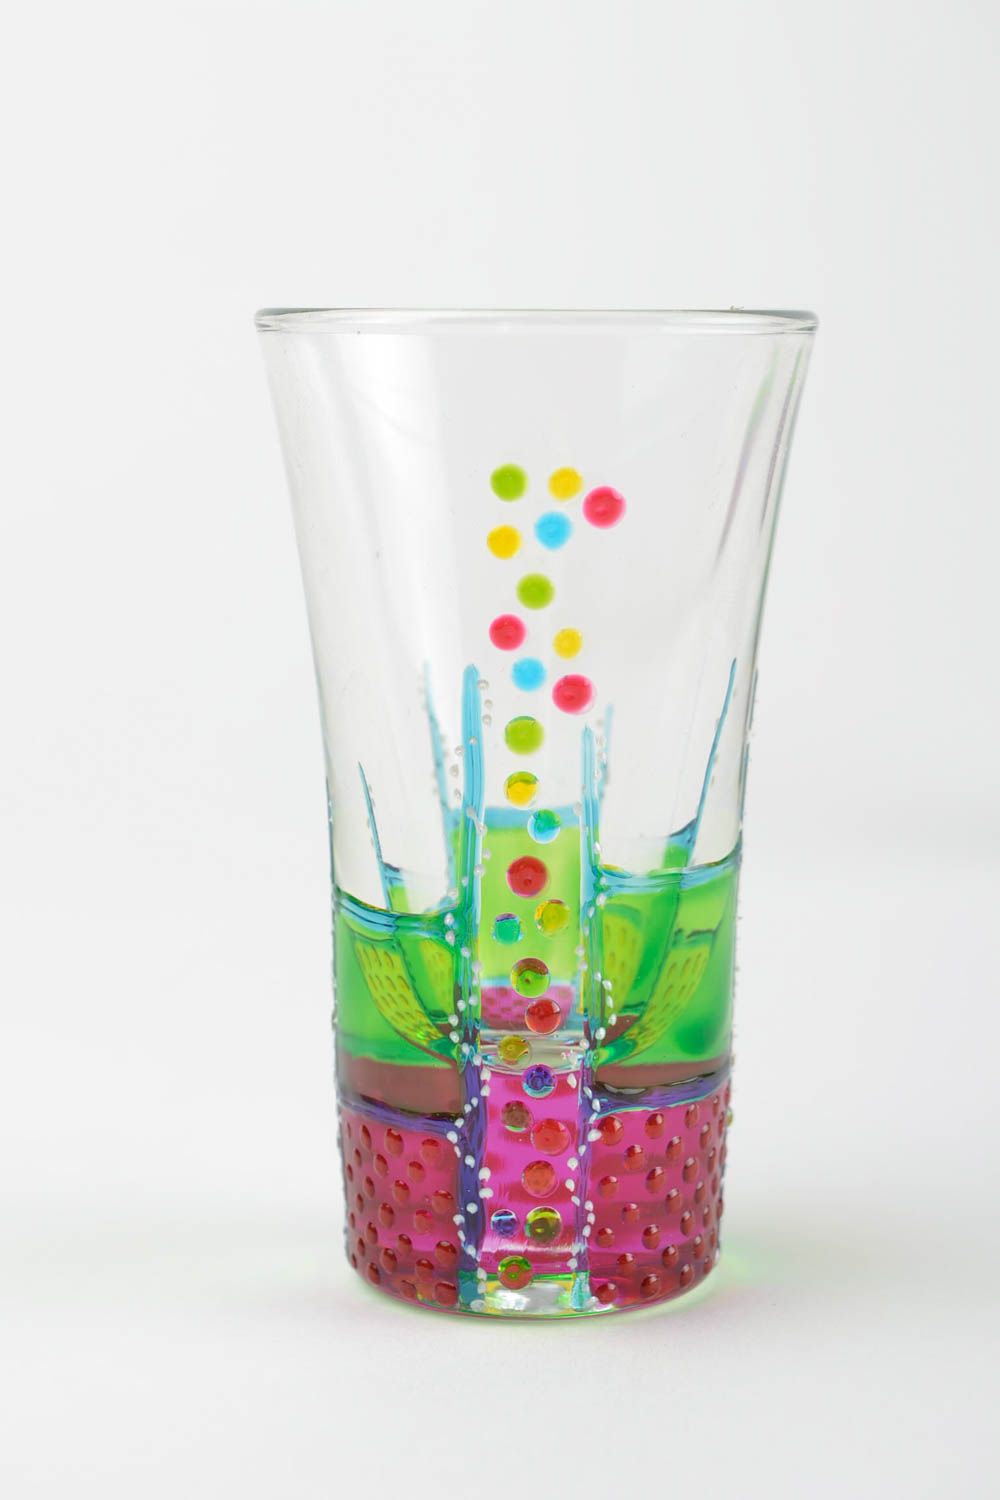 Handmade shot glasses designer glass tableware ideas for home decor photo 4